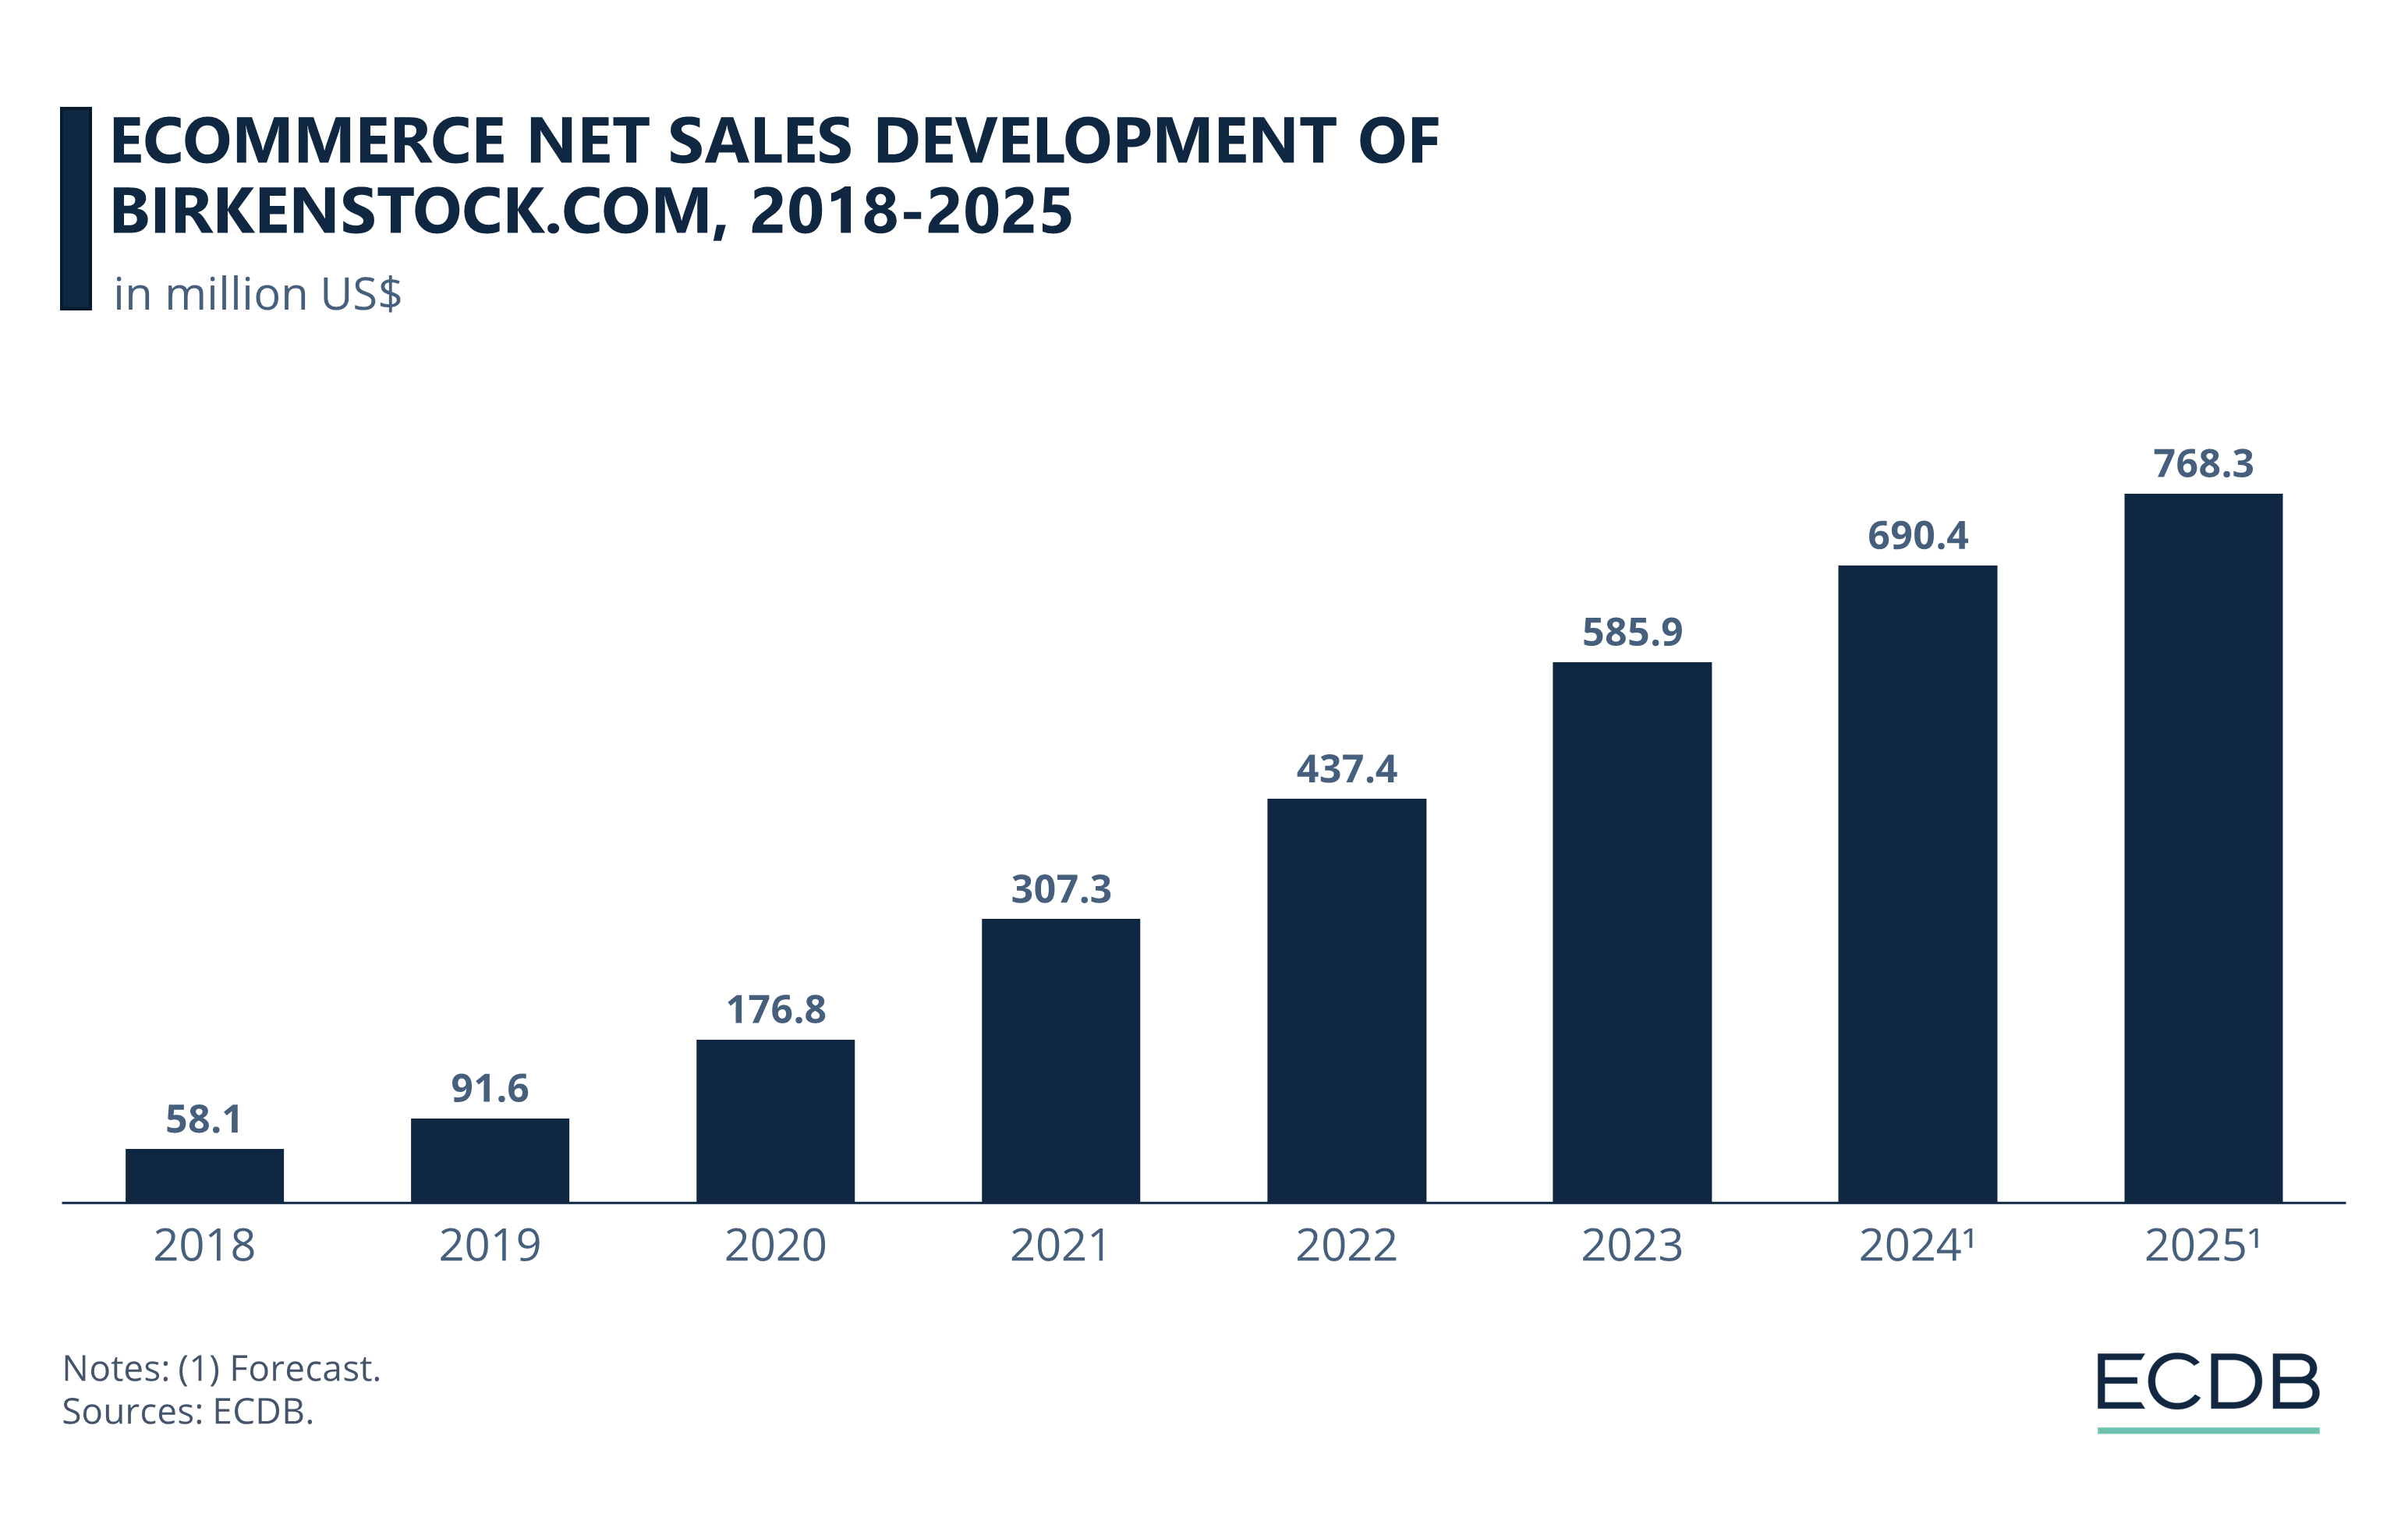 eCommerce Net Sales Development of Birkenstock.com, 2018-2025